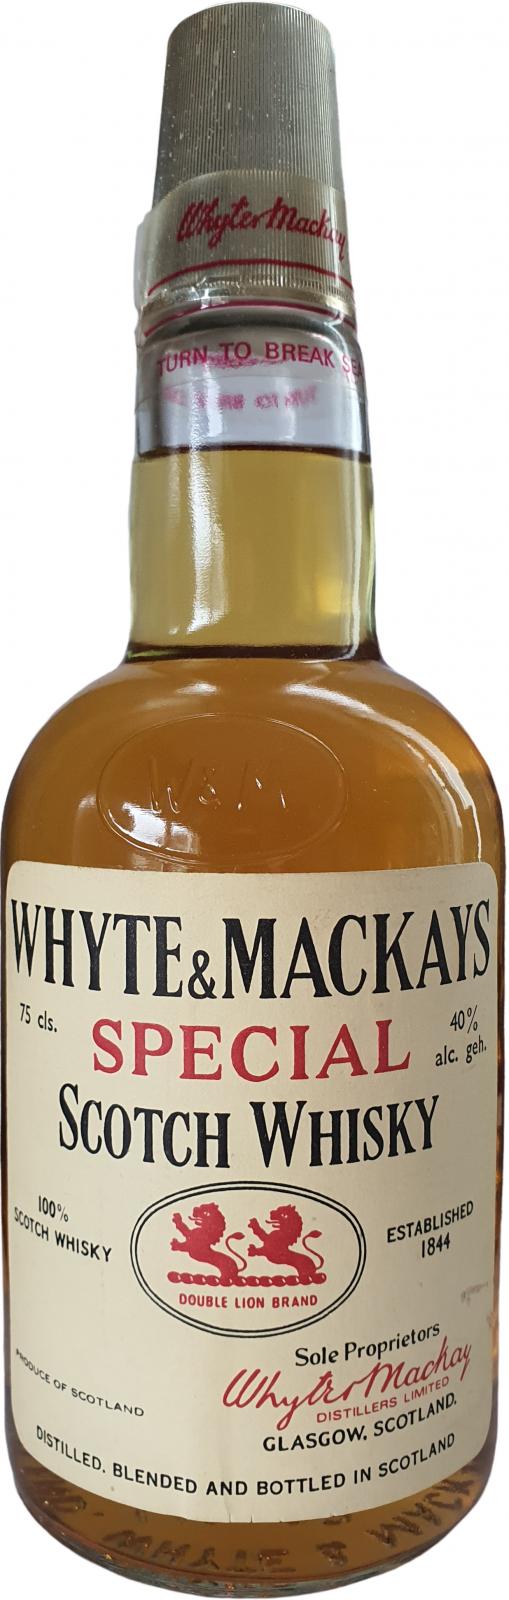 Whyte & Mackay Special Scotch Whisky W&M 100% Scotch Whisky 40% 750ml